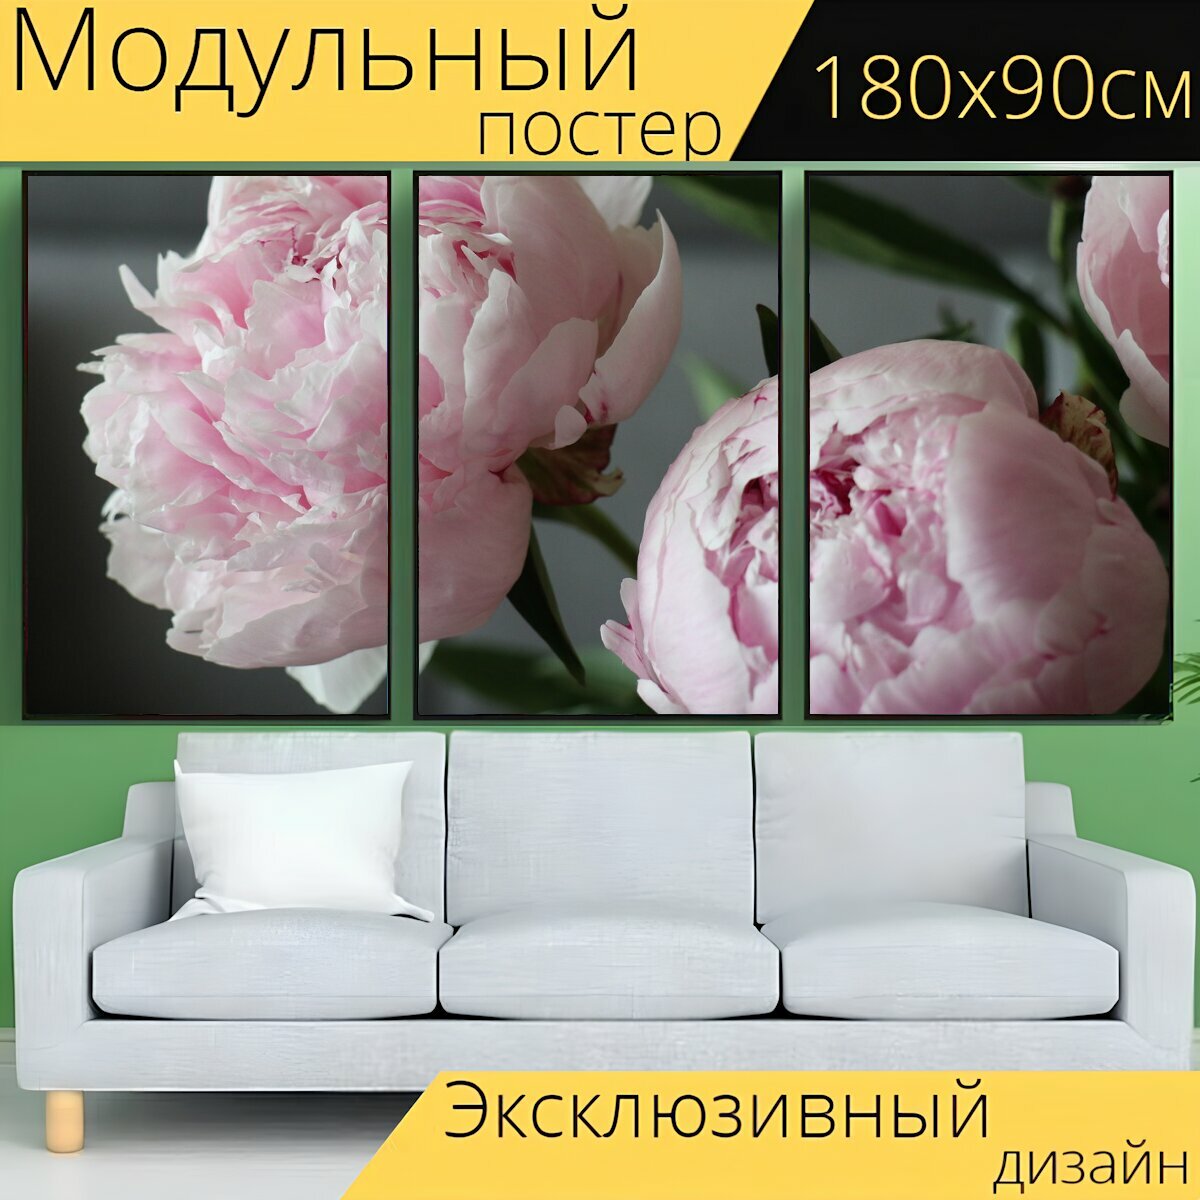 Модульный постер "Весна, цветы, пионы" 180 x 90 см. для интерьера